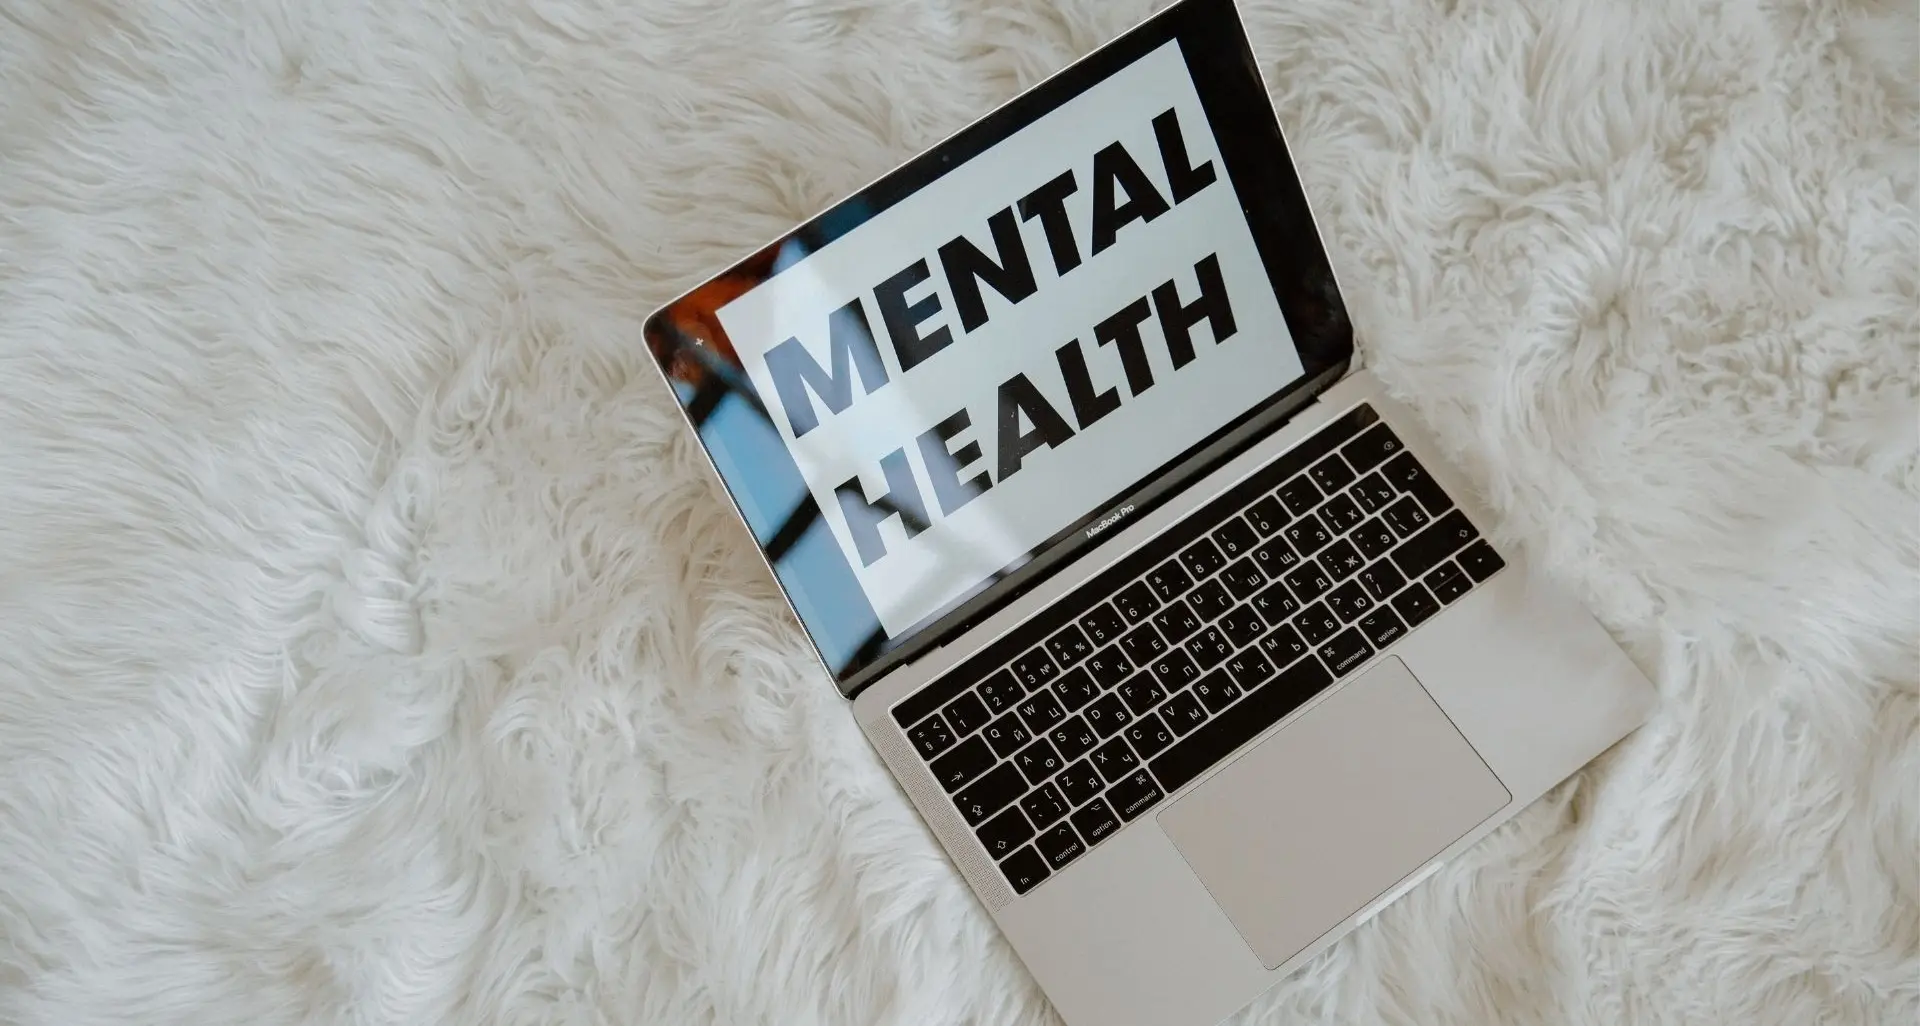 La salute mentale e il PNRR: la salute mentale non è meno importante della salute fisica -video, diapo e report del seminario